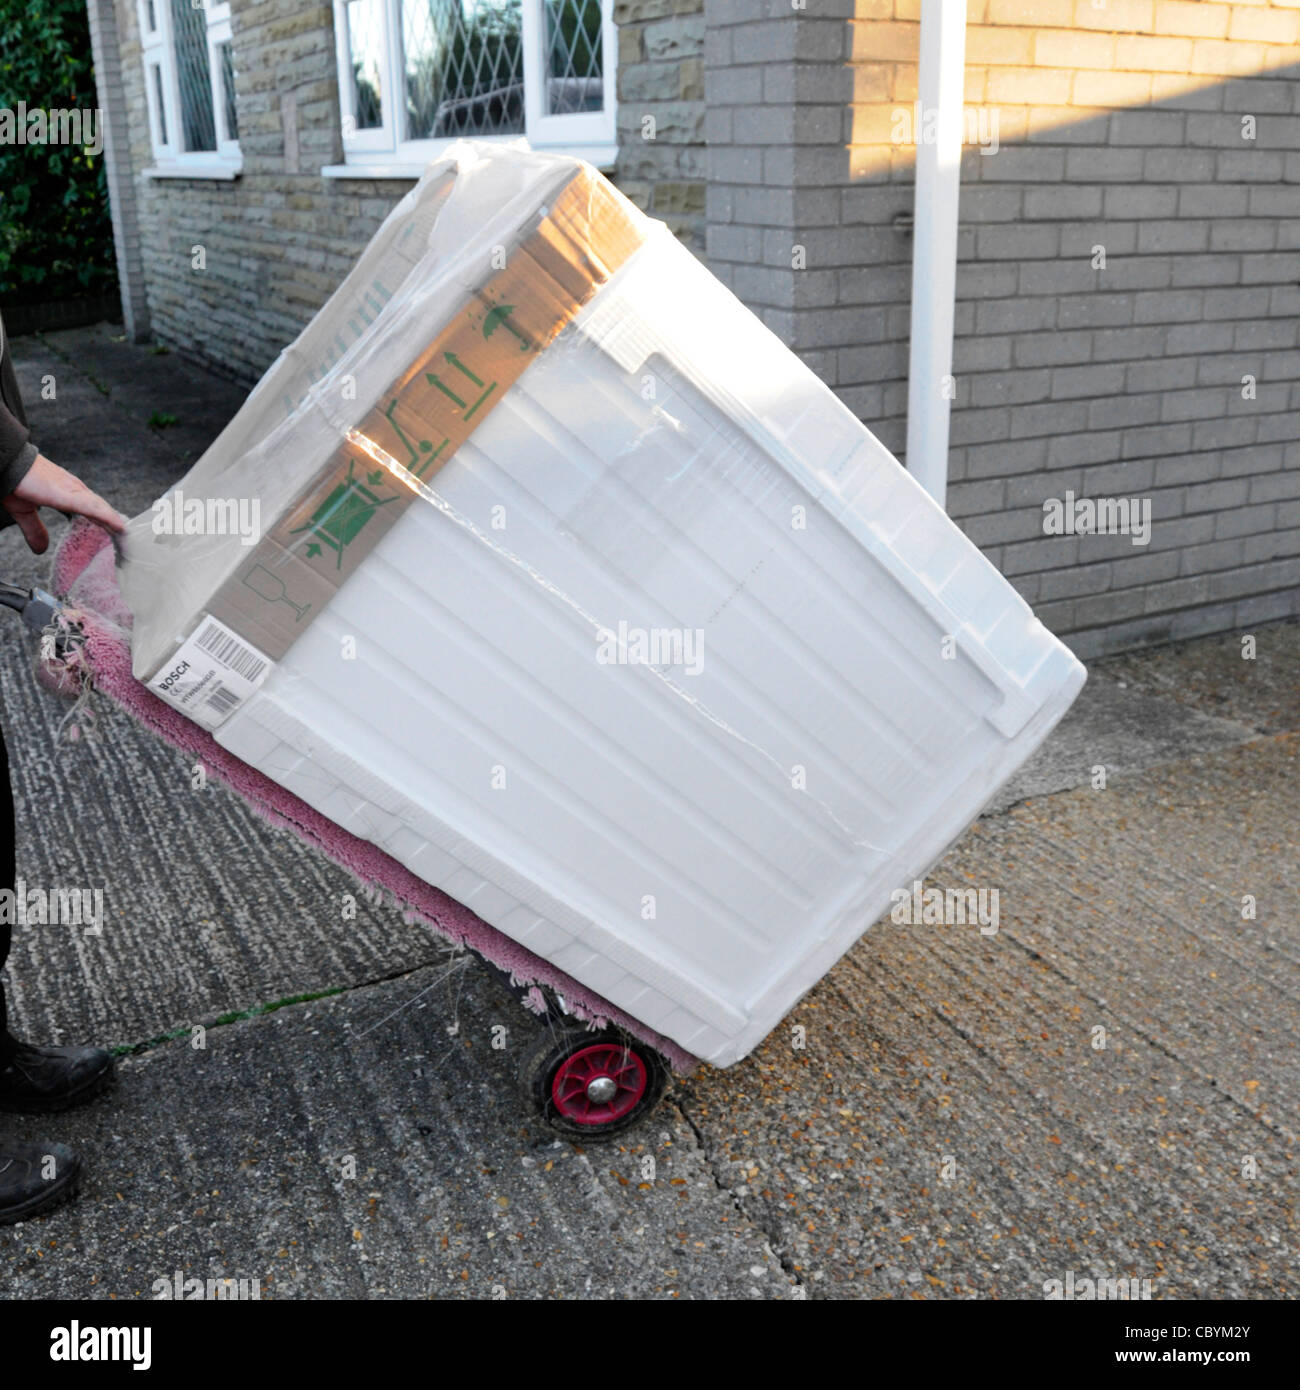 À l'aide de l'homme livraison trolley offrir de nouveaux sèche-linge Bosch à partir de appareil électrique produits blancs retail supply entreprise à un accueil dans l'Essex, Angleterre, Royaume-Uni Banque D'Images